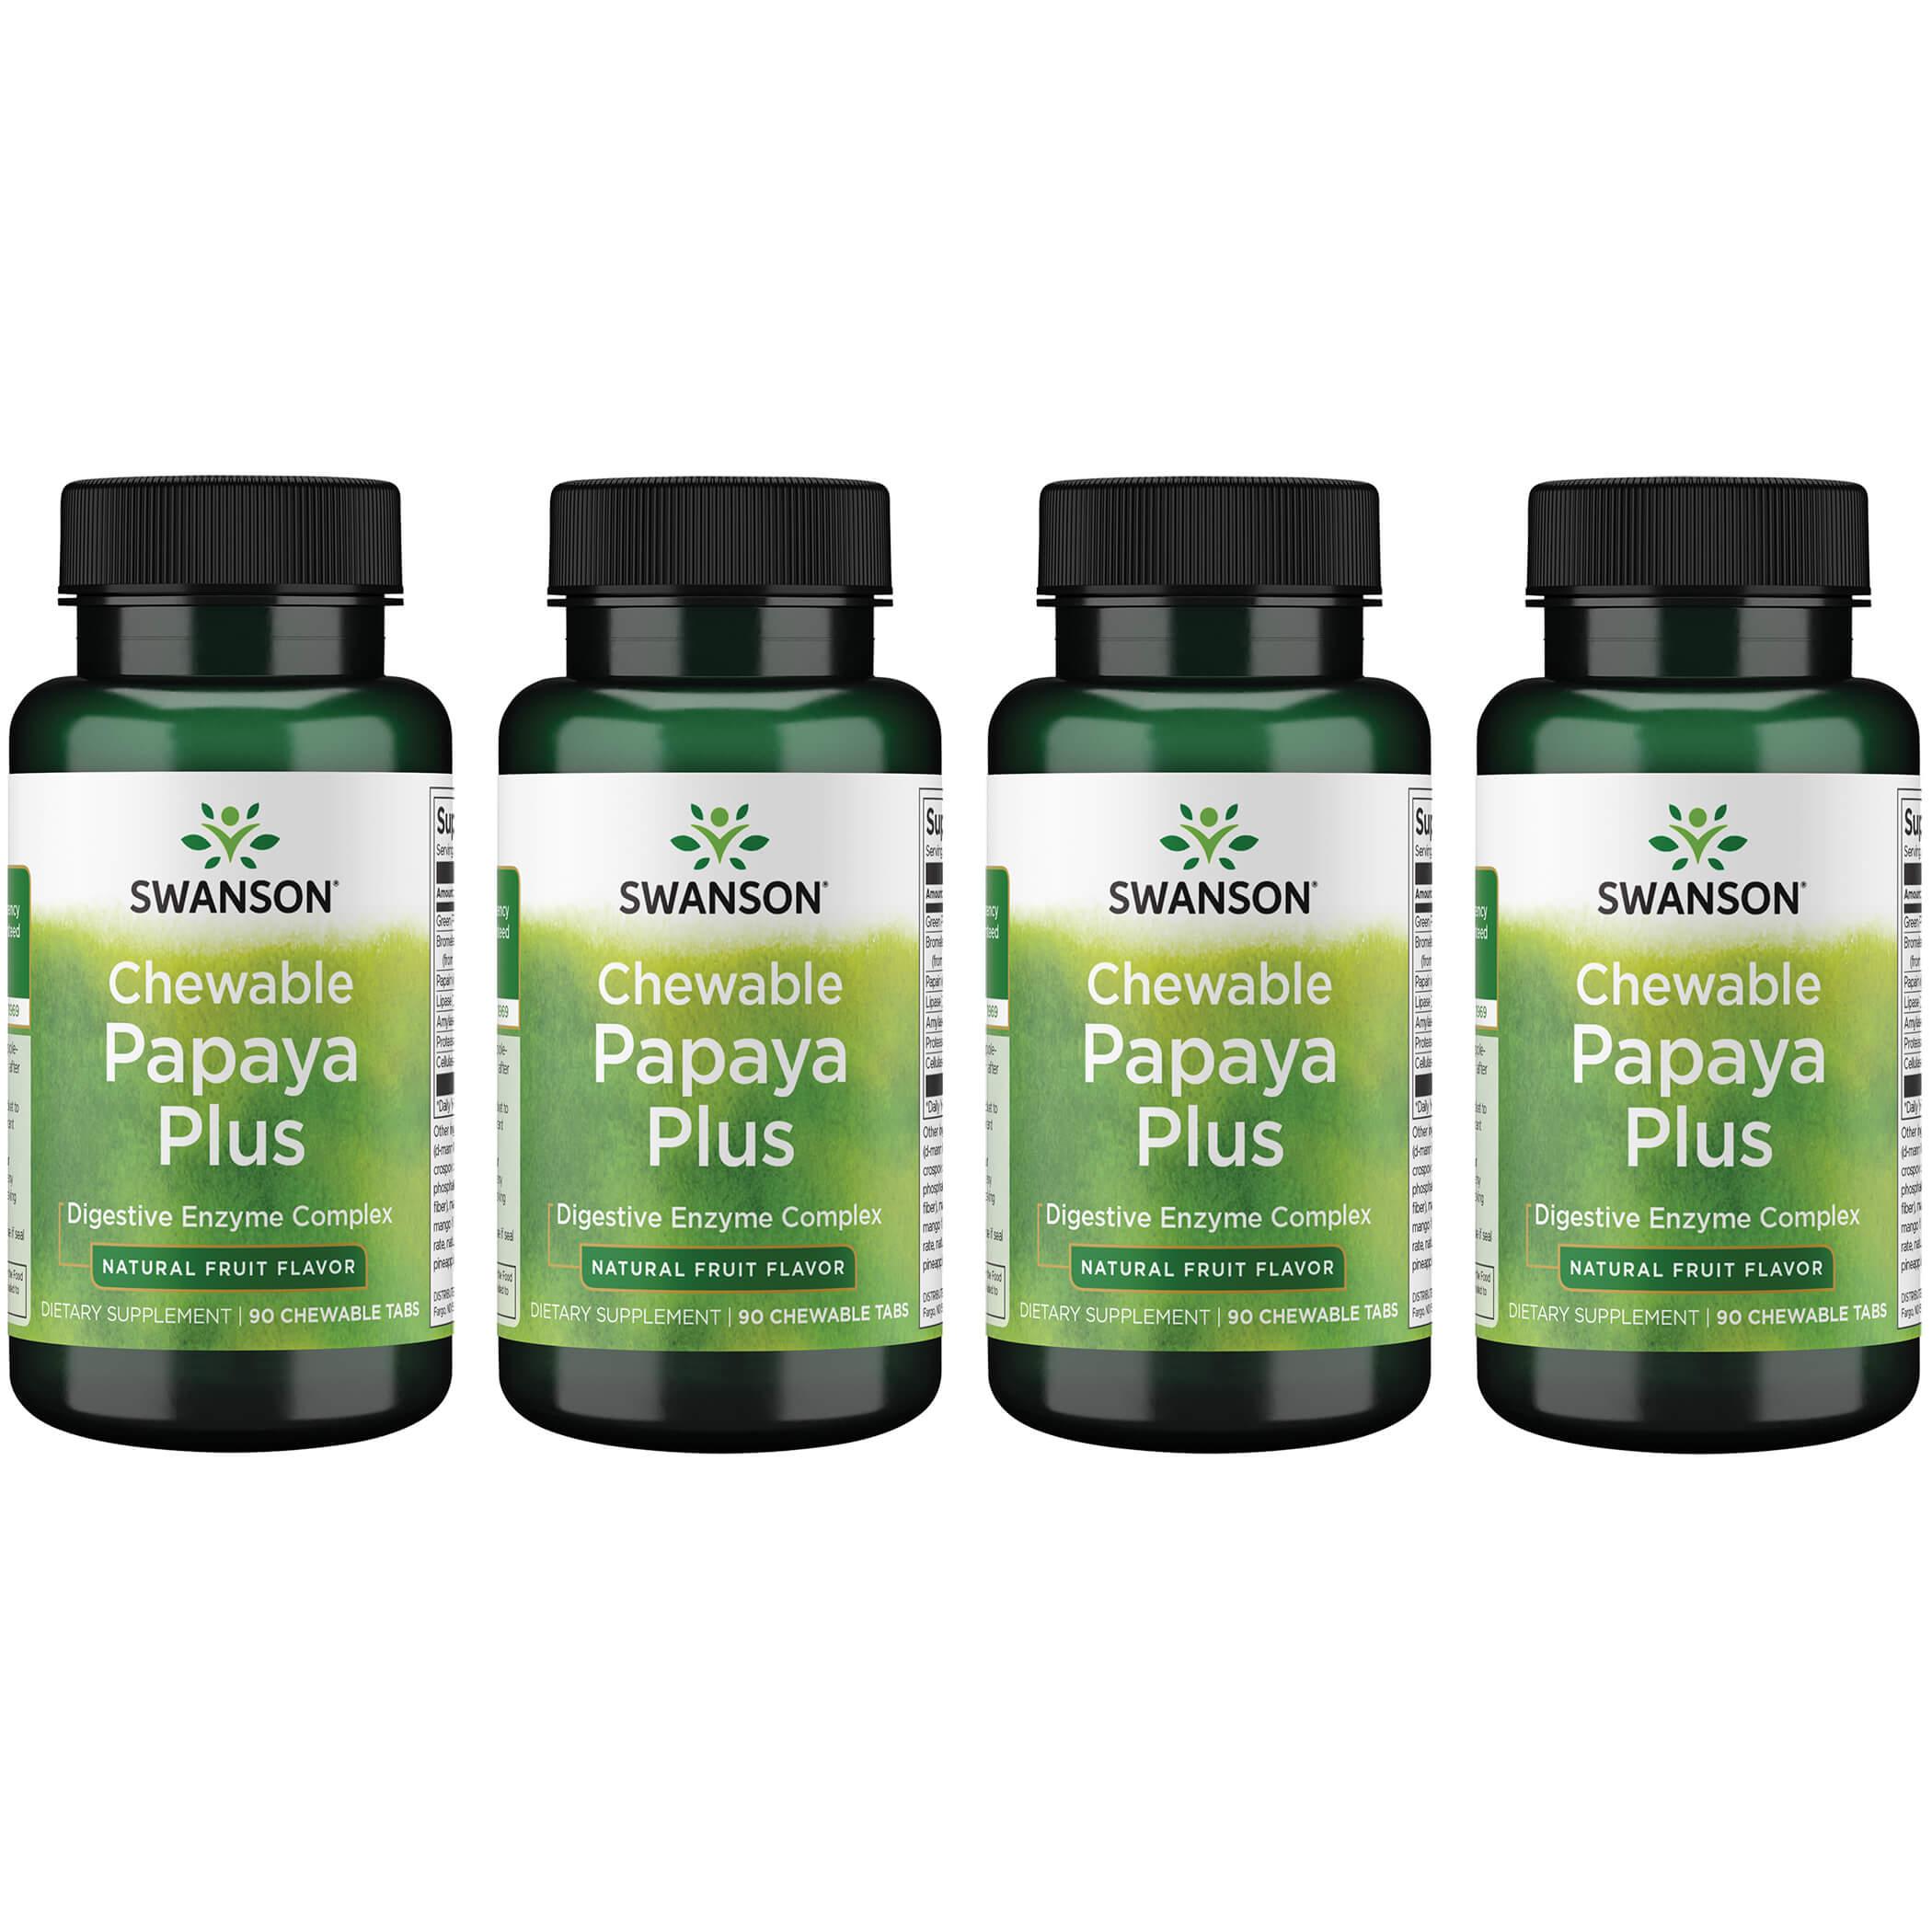 Swanson Premium Chewable Papaya Plus - Natural Fruit Flavor 4 Pack Supplement Vitamin 90 Chewables